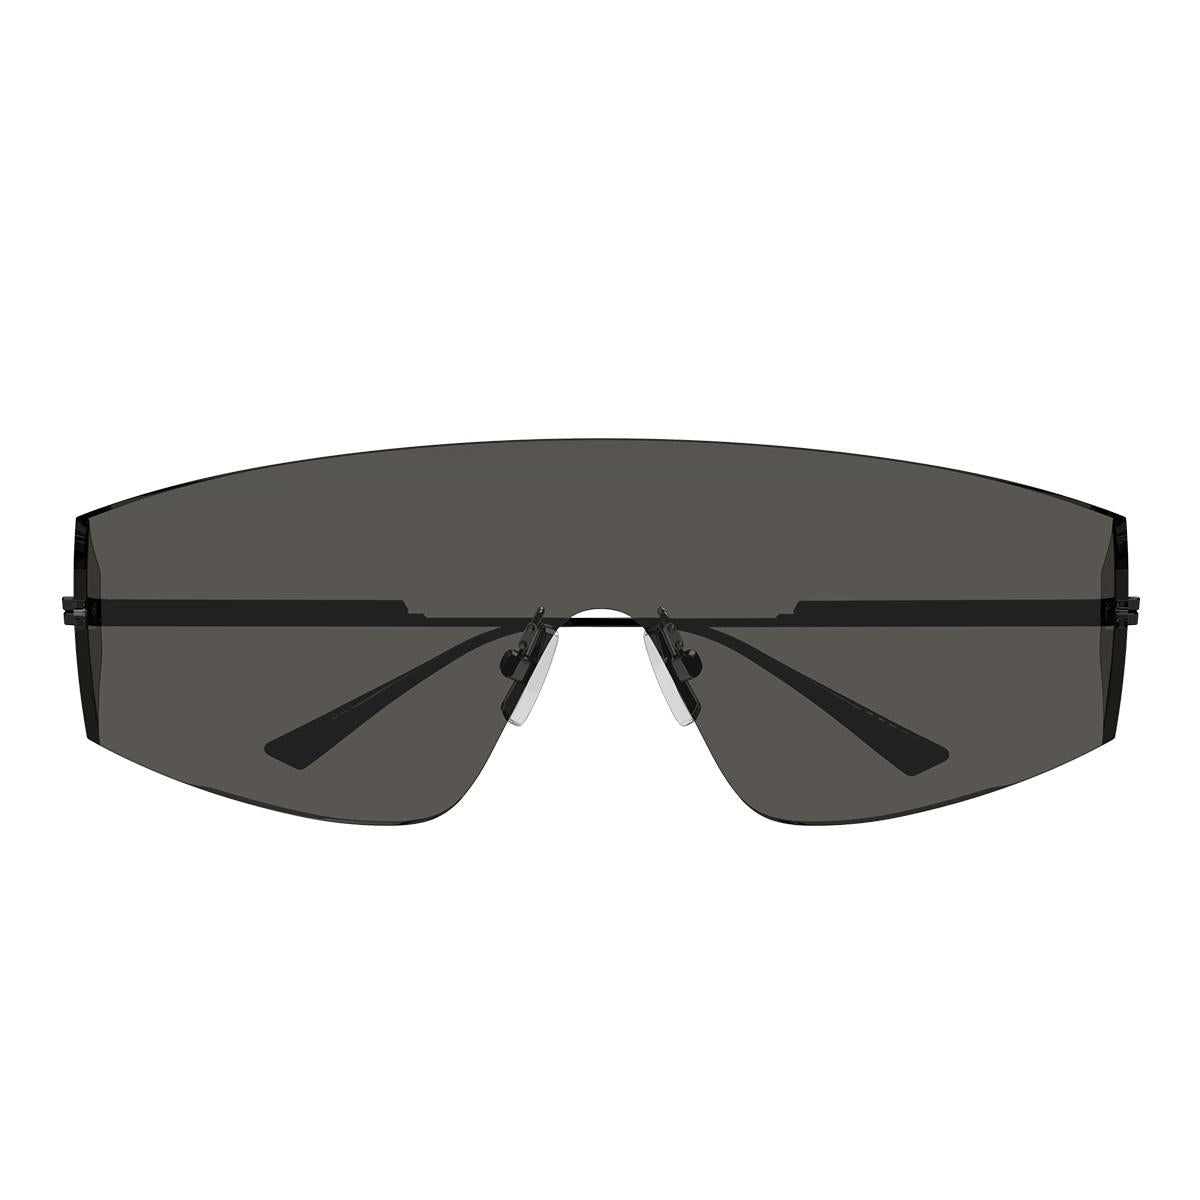 Bottega Veneta Sunglasses In Gray